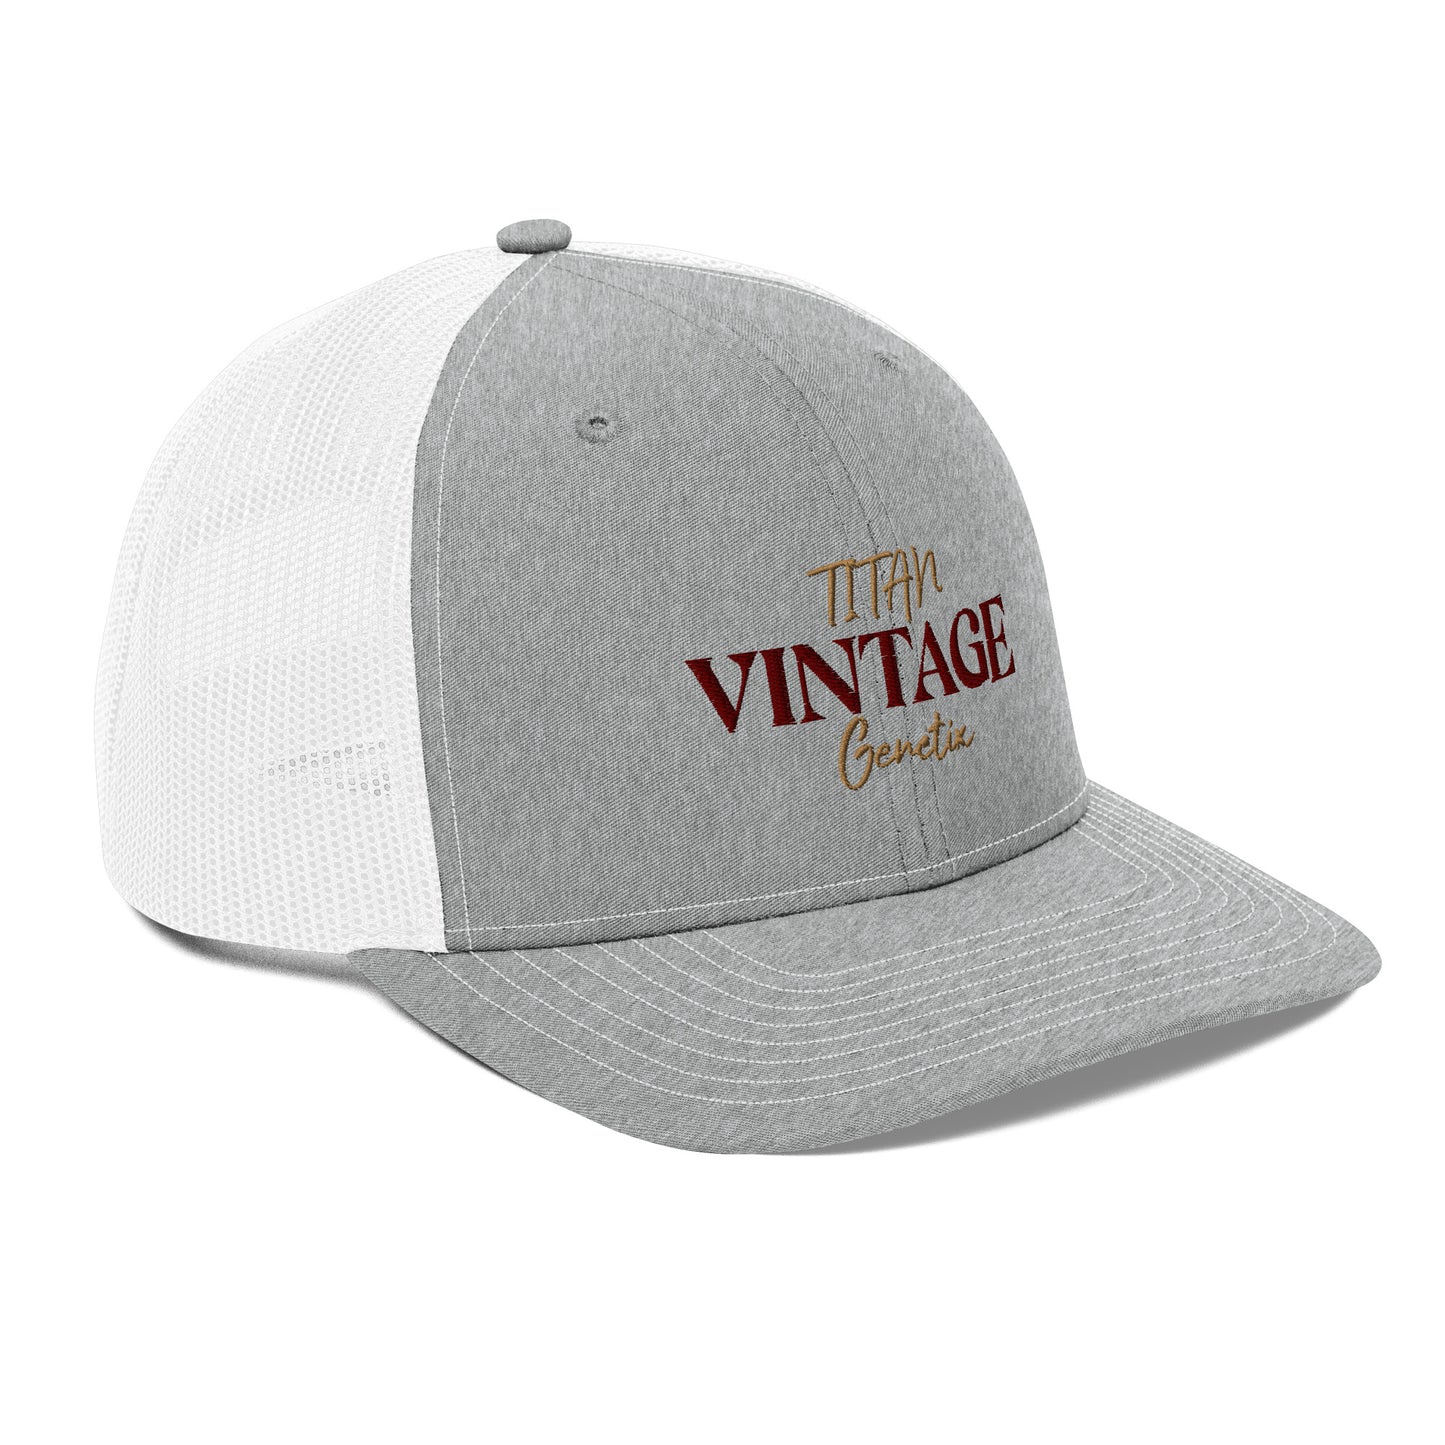 Vintage - Titan Genetix Trucker Cap